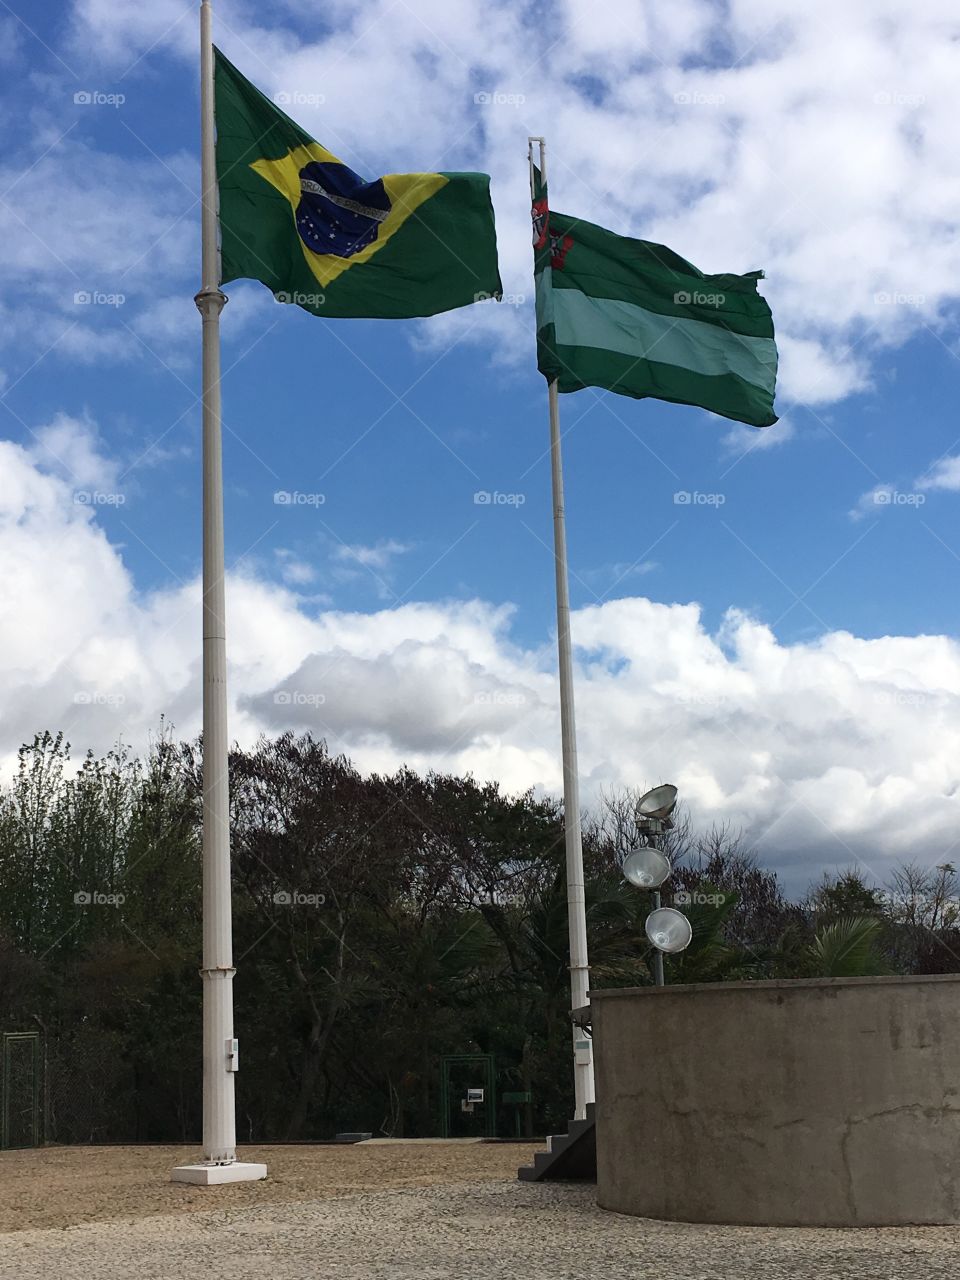 ‪Na semana da #Pátria, as bandeiras do #Brasil e da nossa #Jundiaí mostrando sua imponência. ‬